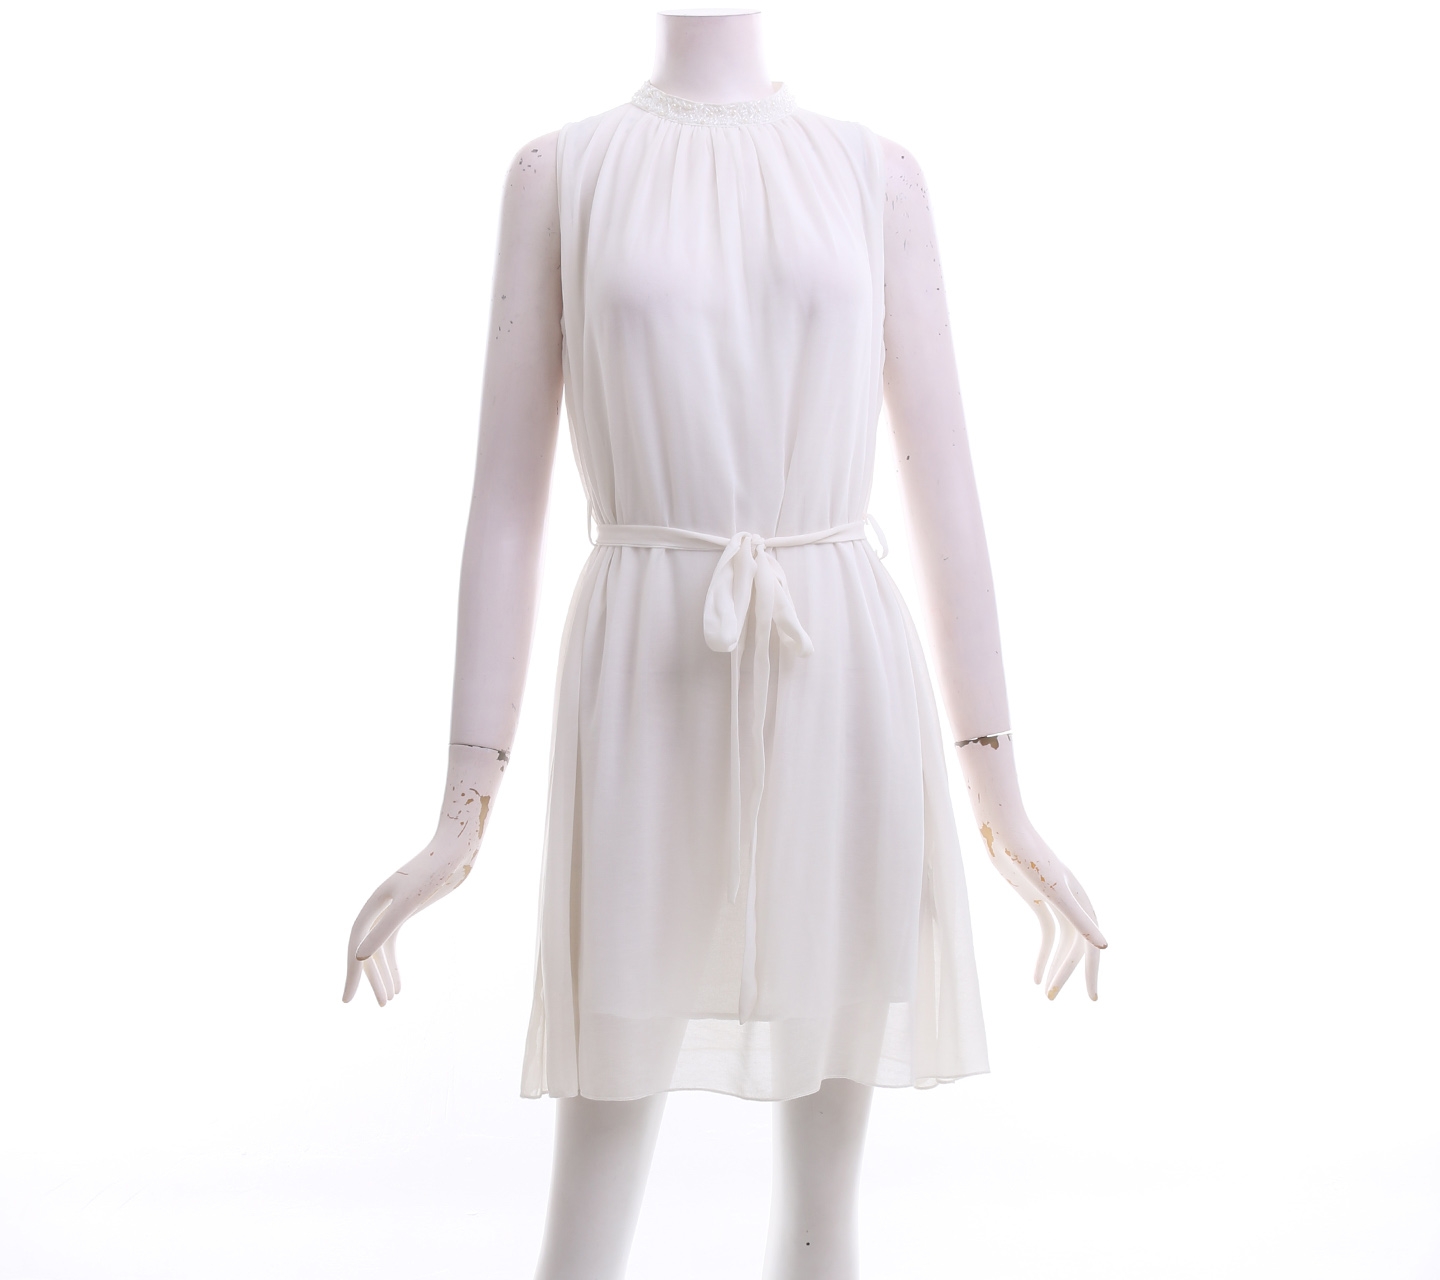 TheoryX Off White Mini Dress